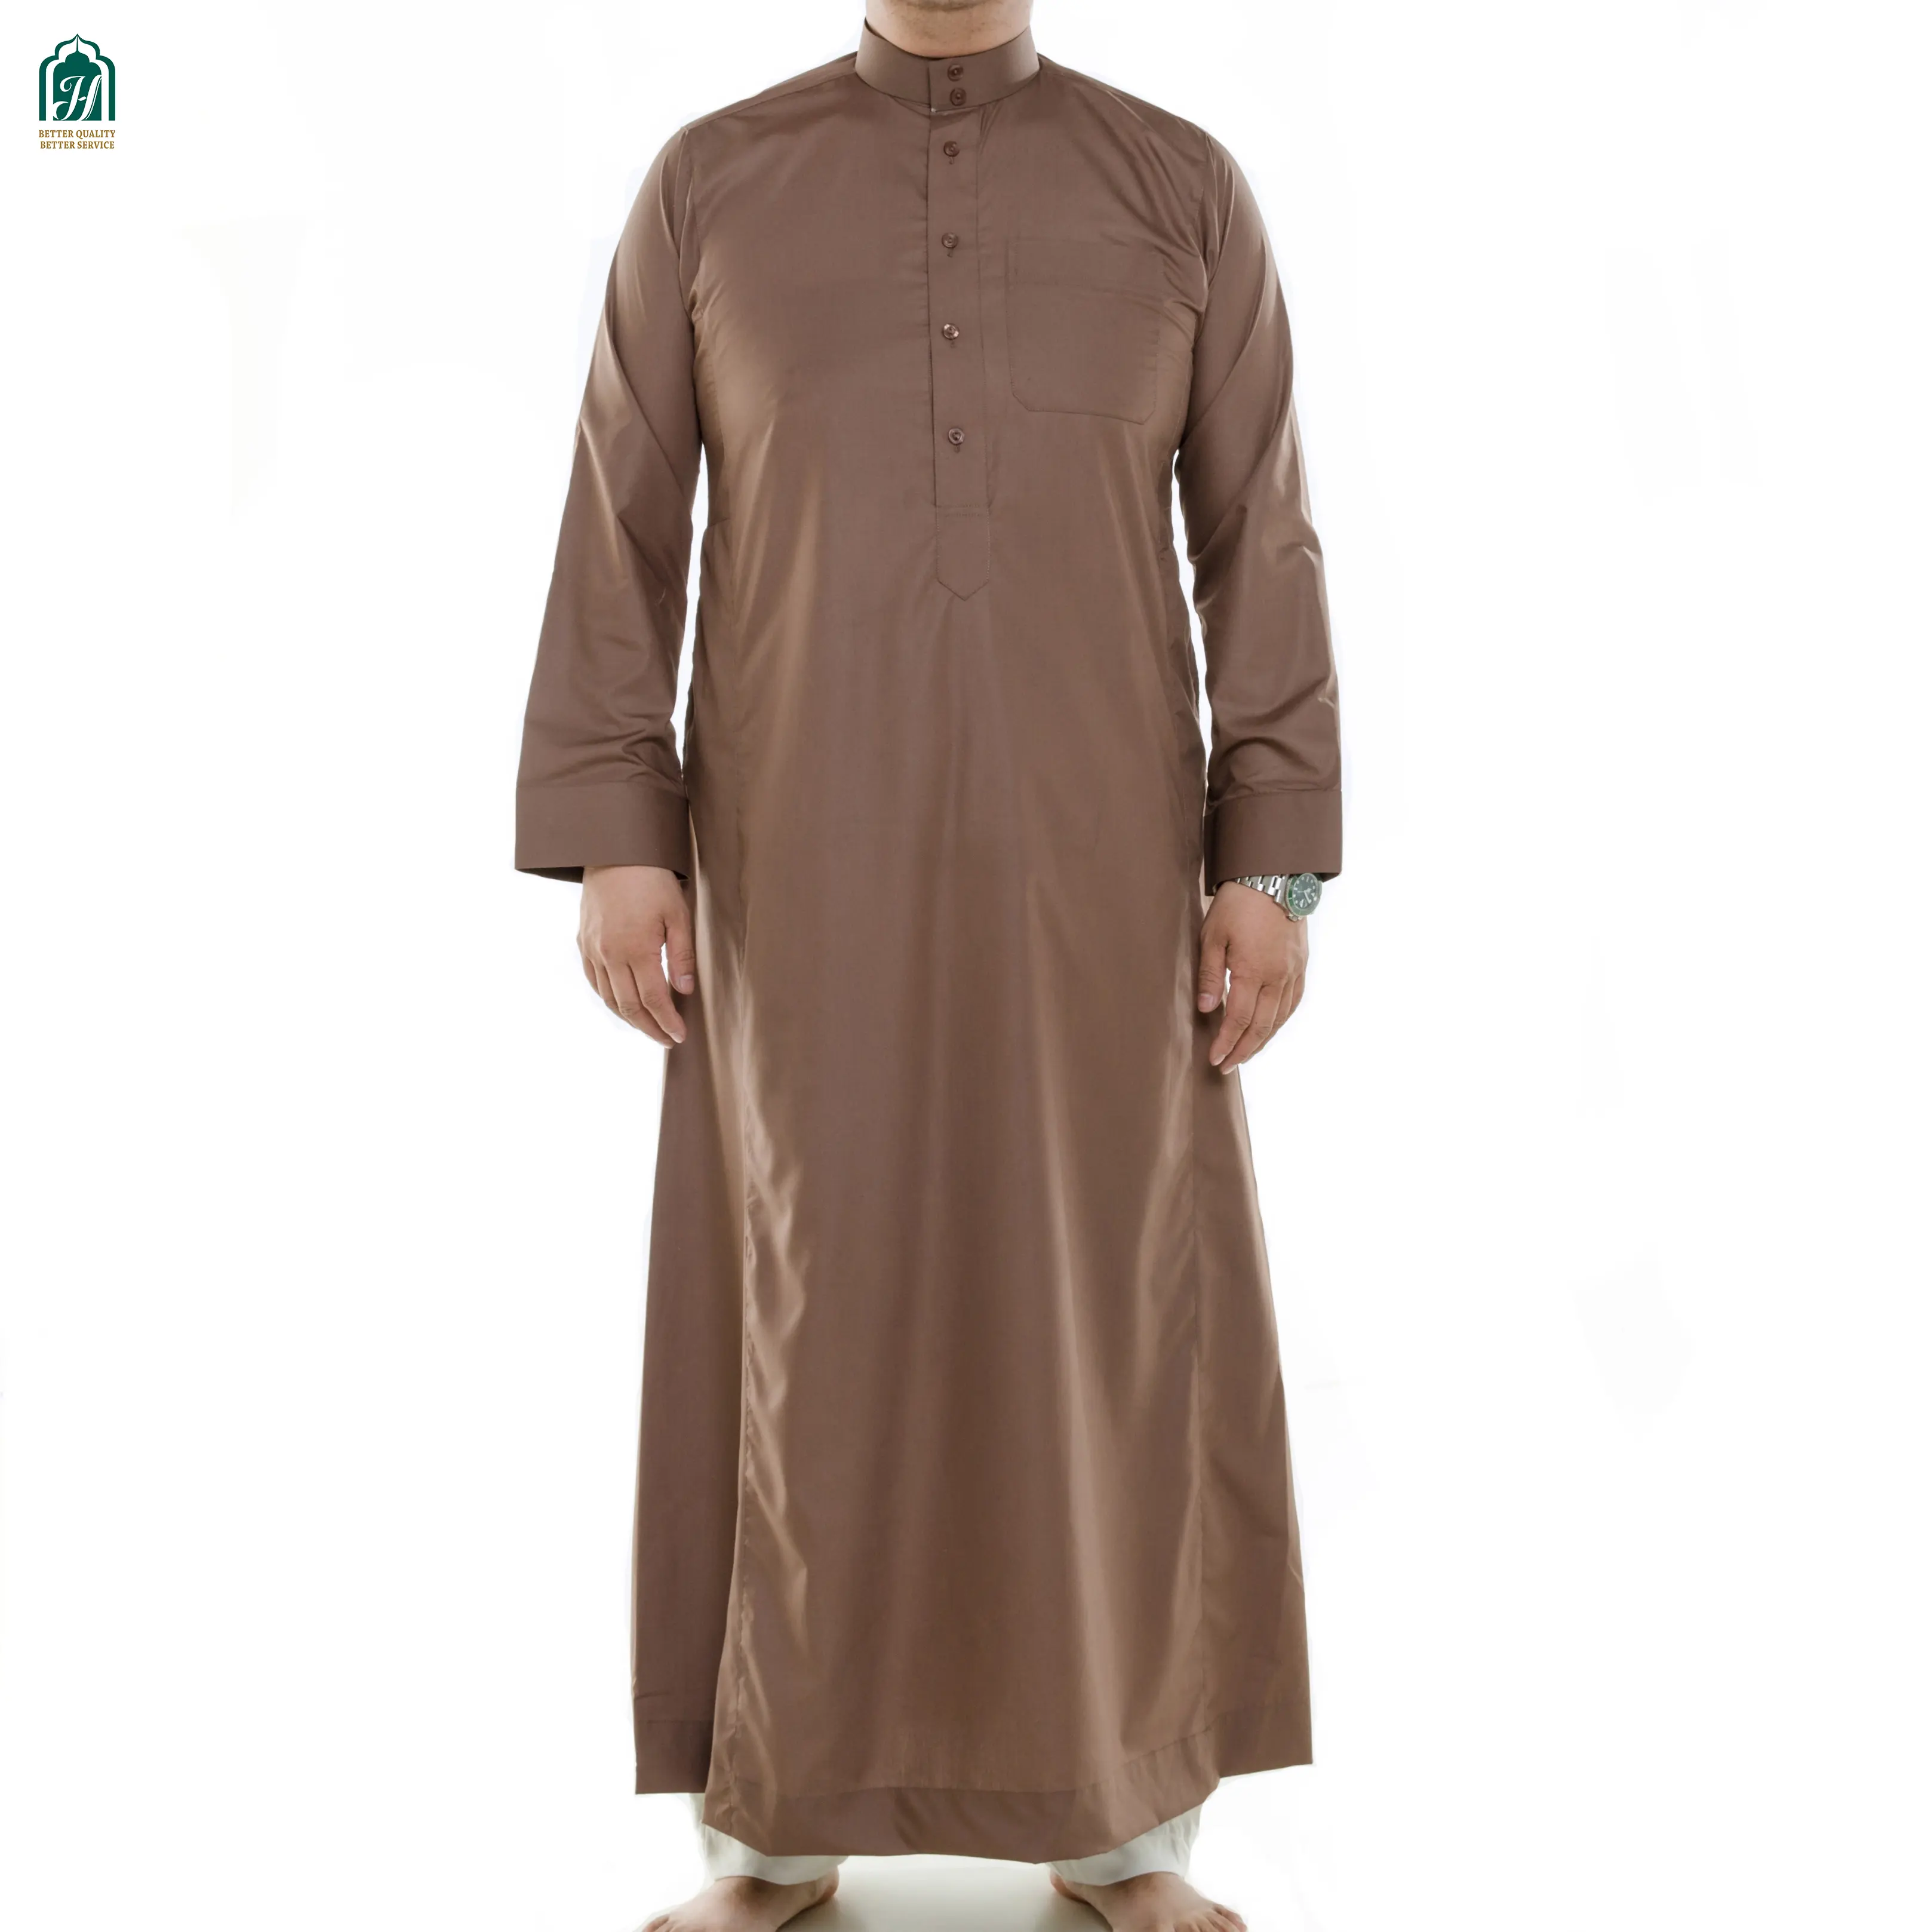 カフタン男性イスラム教徒トーベイスラムアラビア服長袖シャツトップスローブサウジアラビア伝統的な衣装男性イスラム教徒のガウン